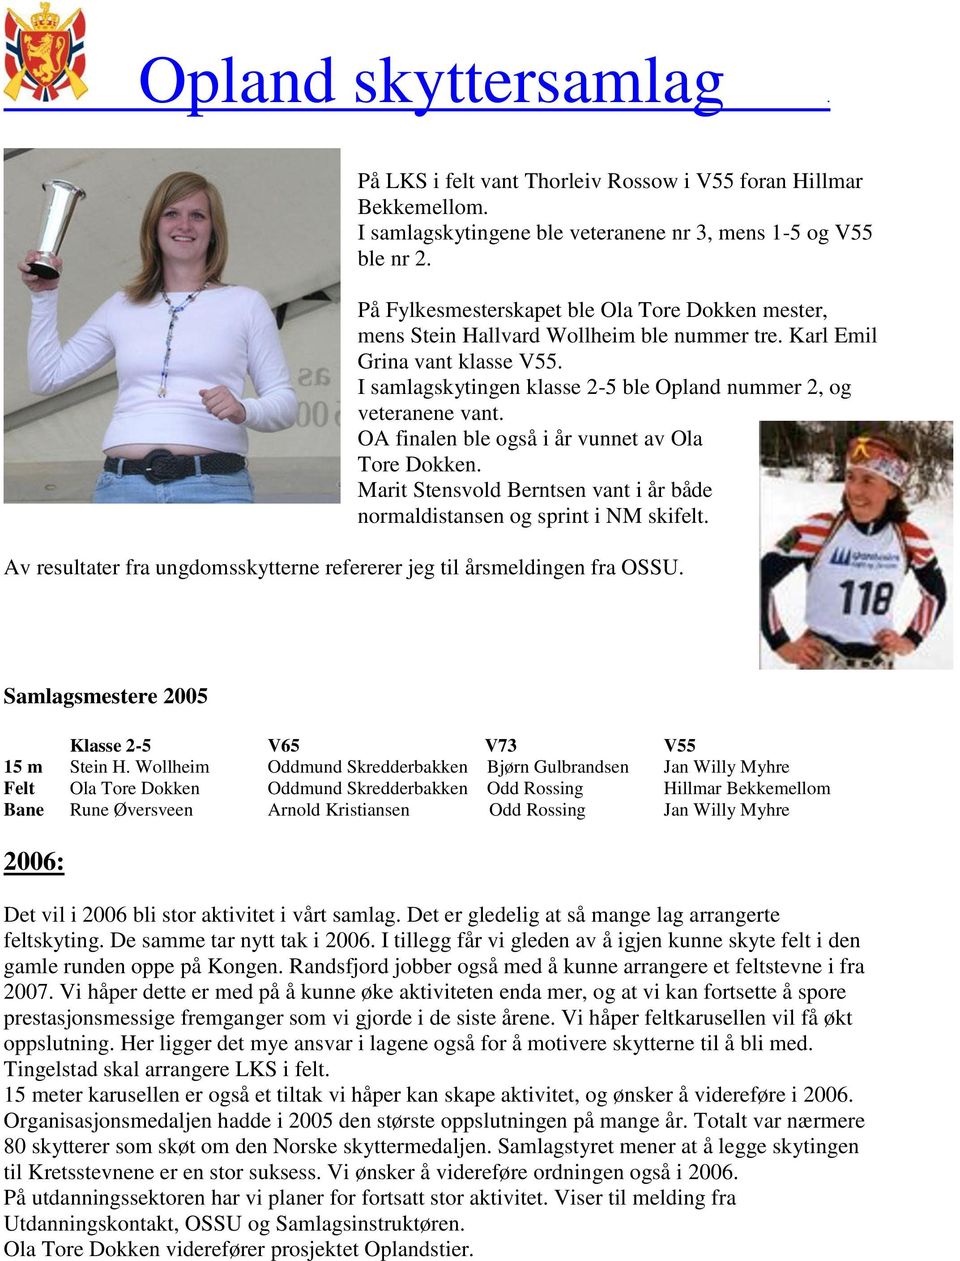 OA finalen ble også i år vunnet av Ola Tore Dokken. Marit Stensvold Berntsen vant i år både normaldistansen og sprint i NM skifelt.